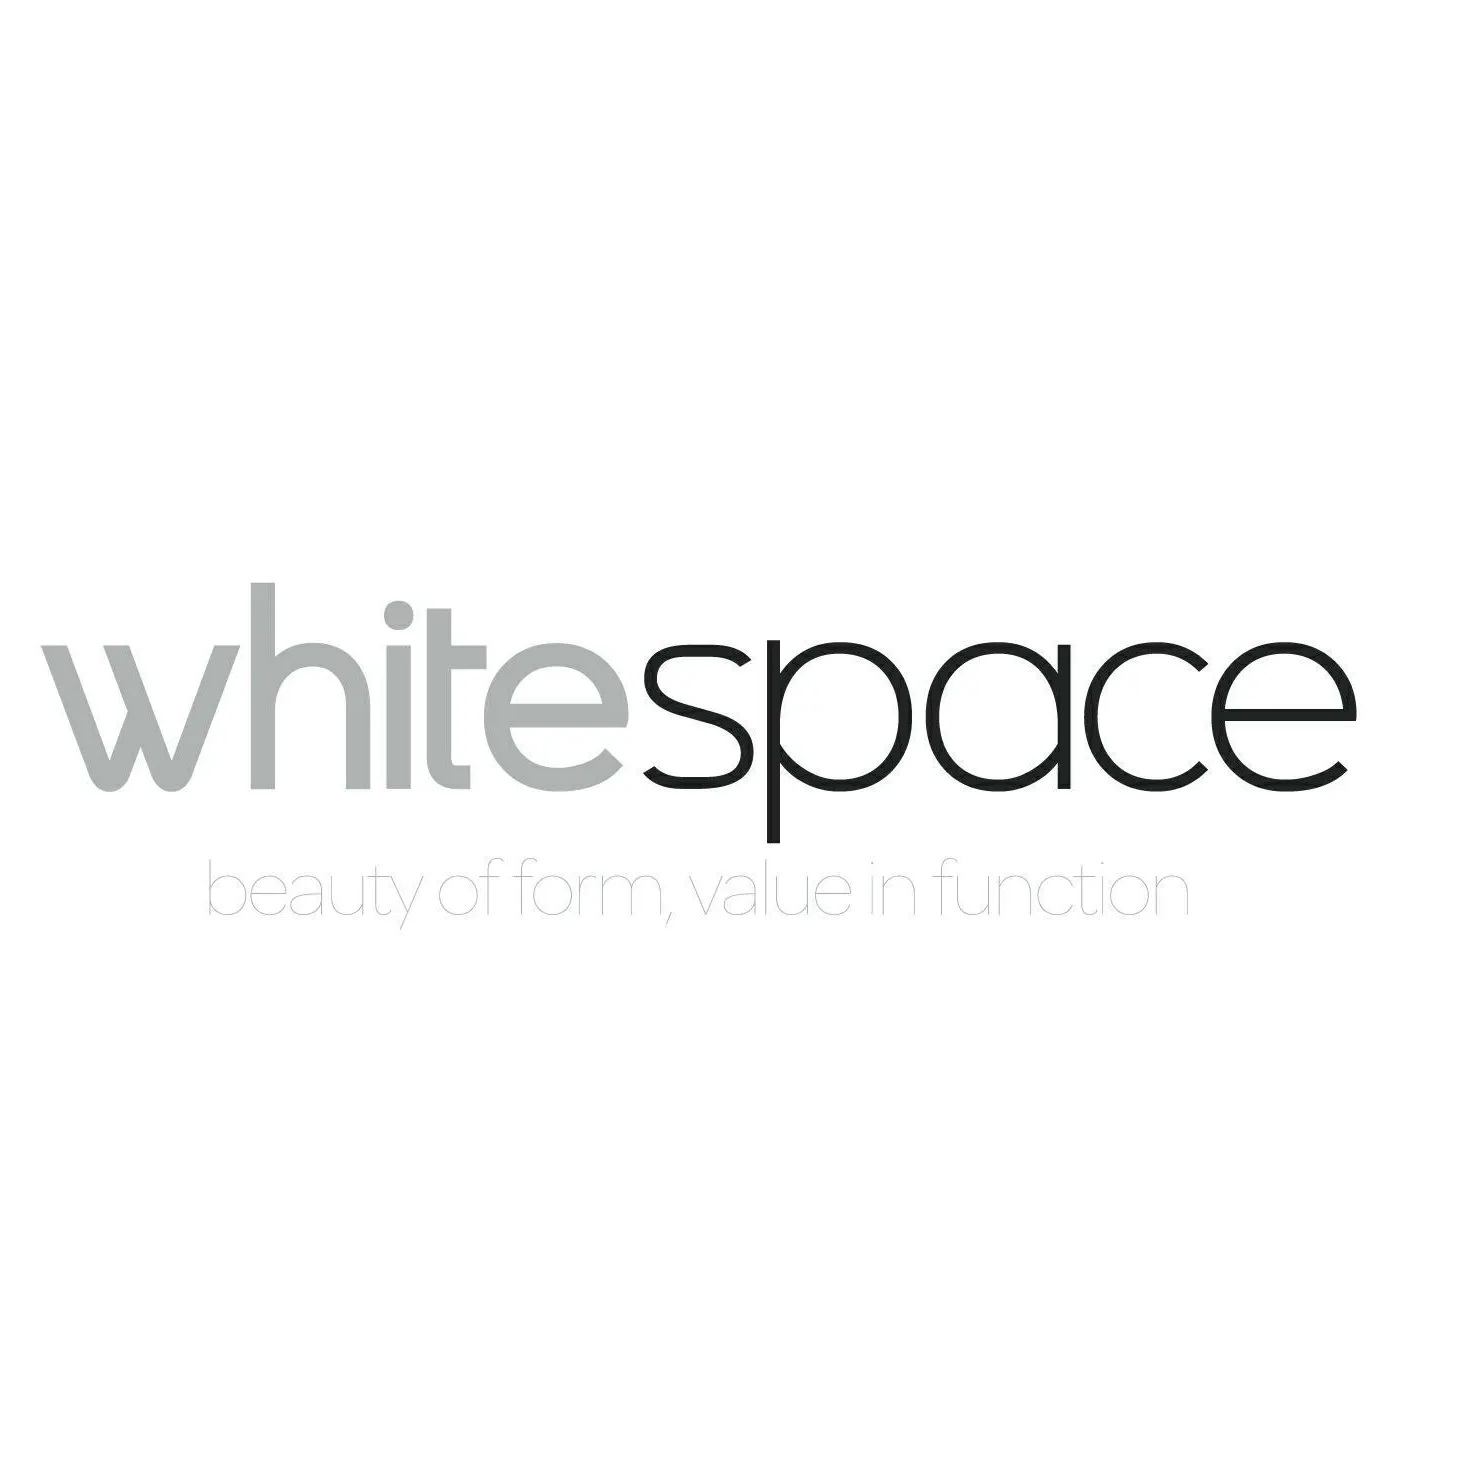 Whitespace Architects